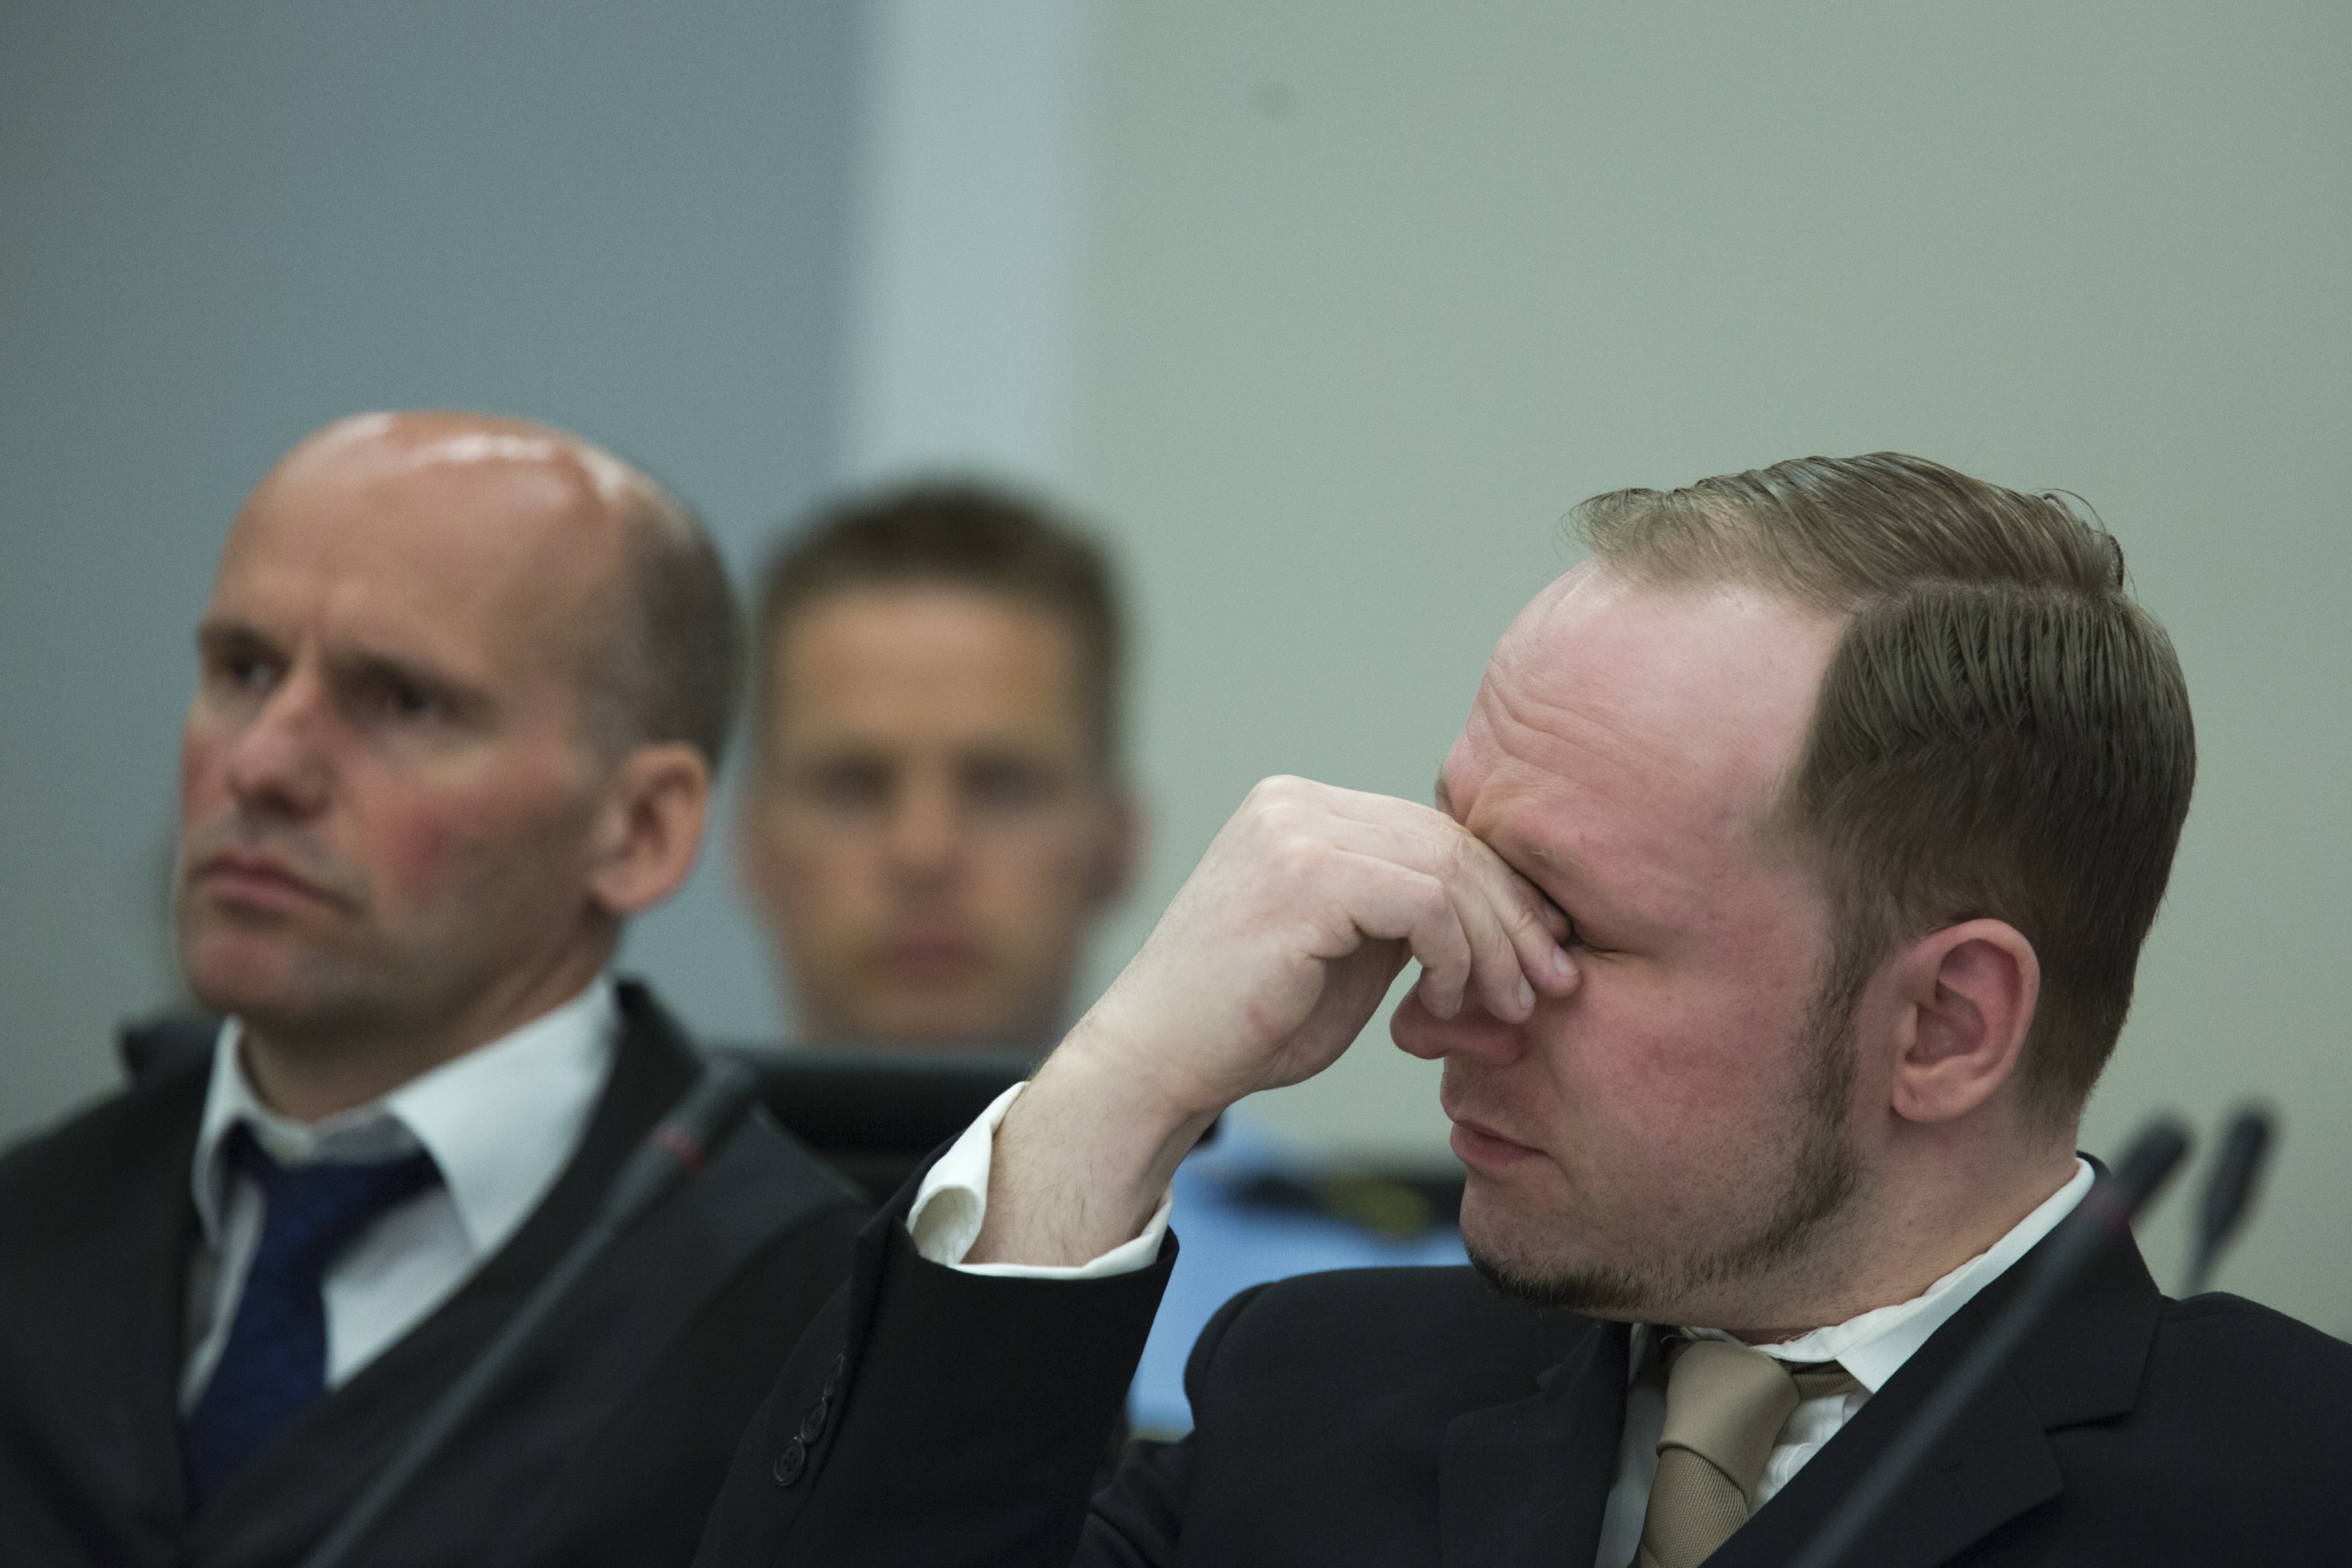 Här bryter Breivik ihop i tårar när hans propagandafilm visas i rättssalen.